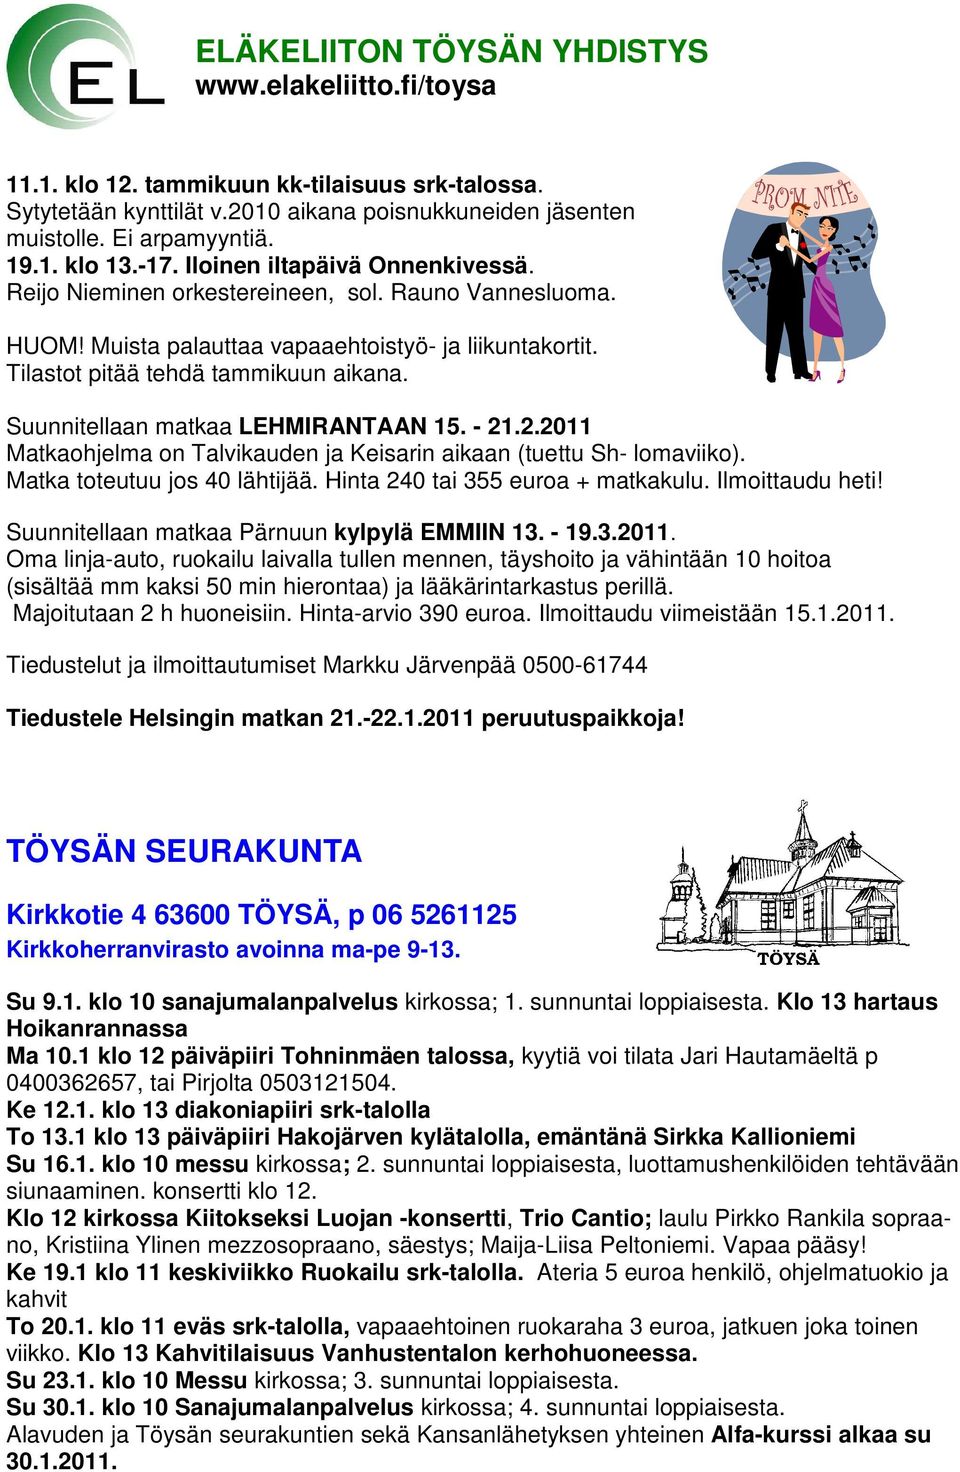 Suunnitellaan matkaa LEHMIRANTAAN 15. - 21.2.2011 Matkaohjelma on Talvikauden ja Keisarin aikaan (tuettu Sh- lomaviiko). Matka toteutuu jos 40 lähtijää. Hinta 240 tai 355 euroa + matkakulu.